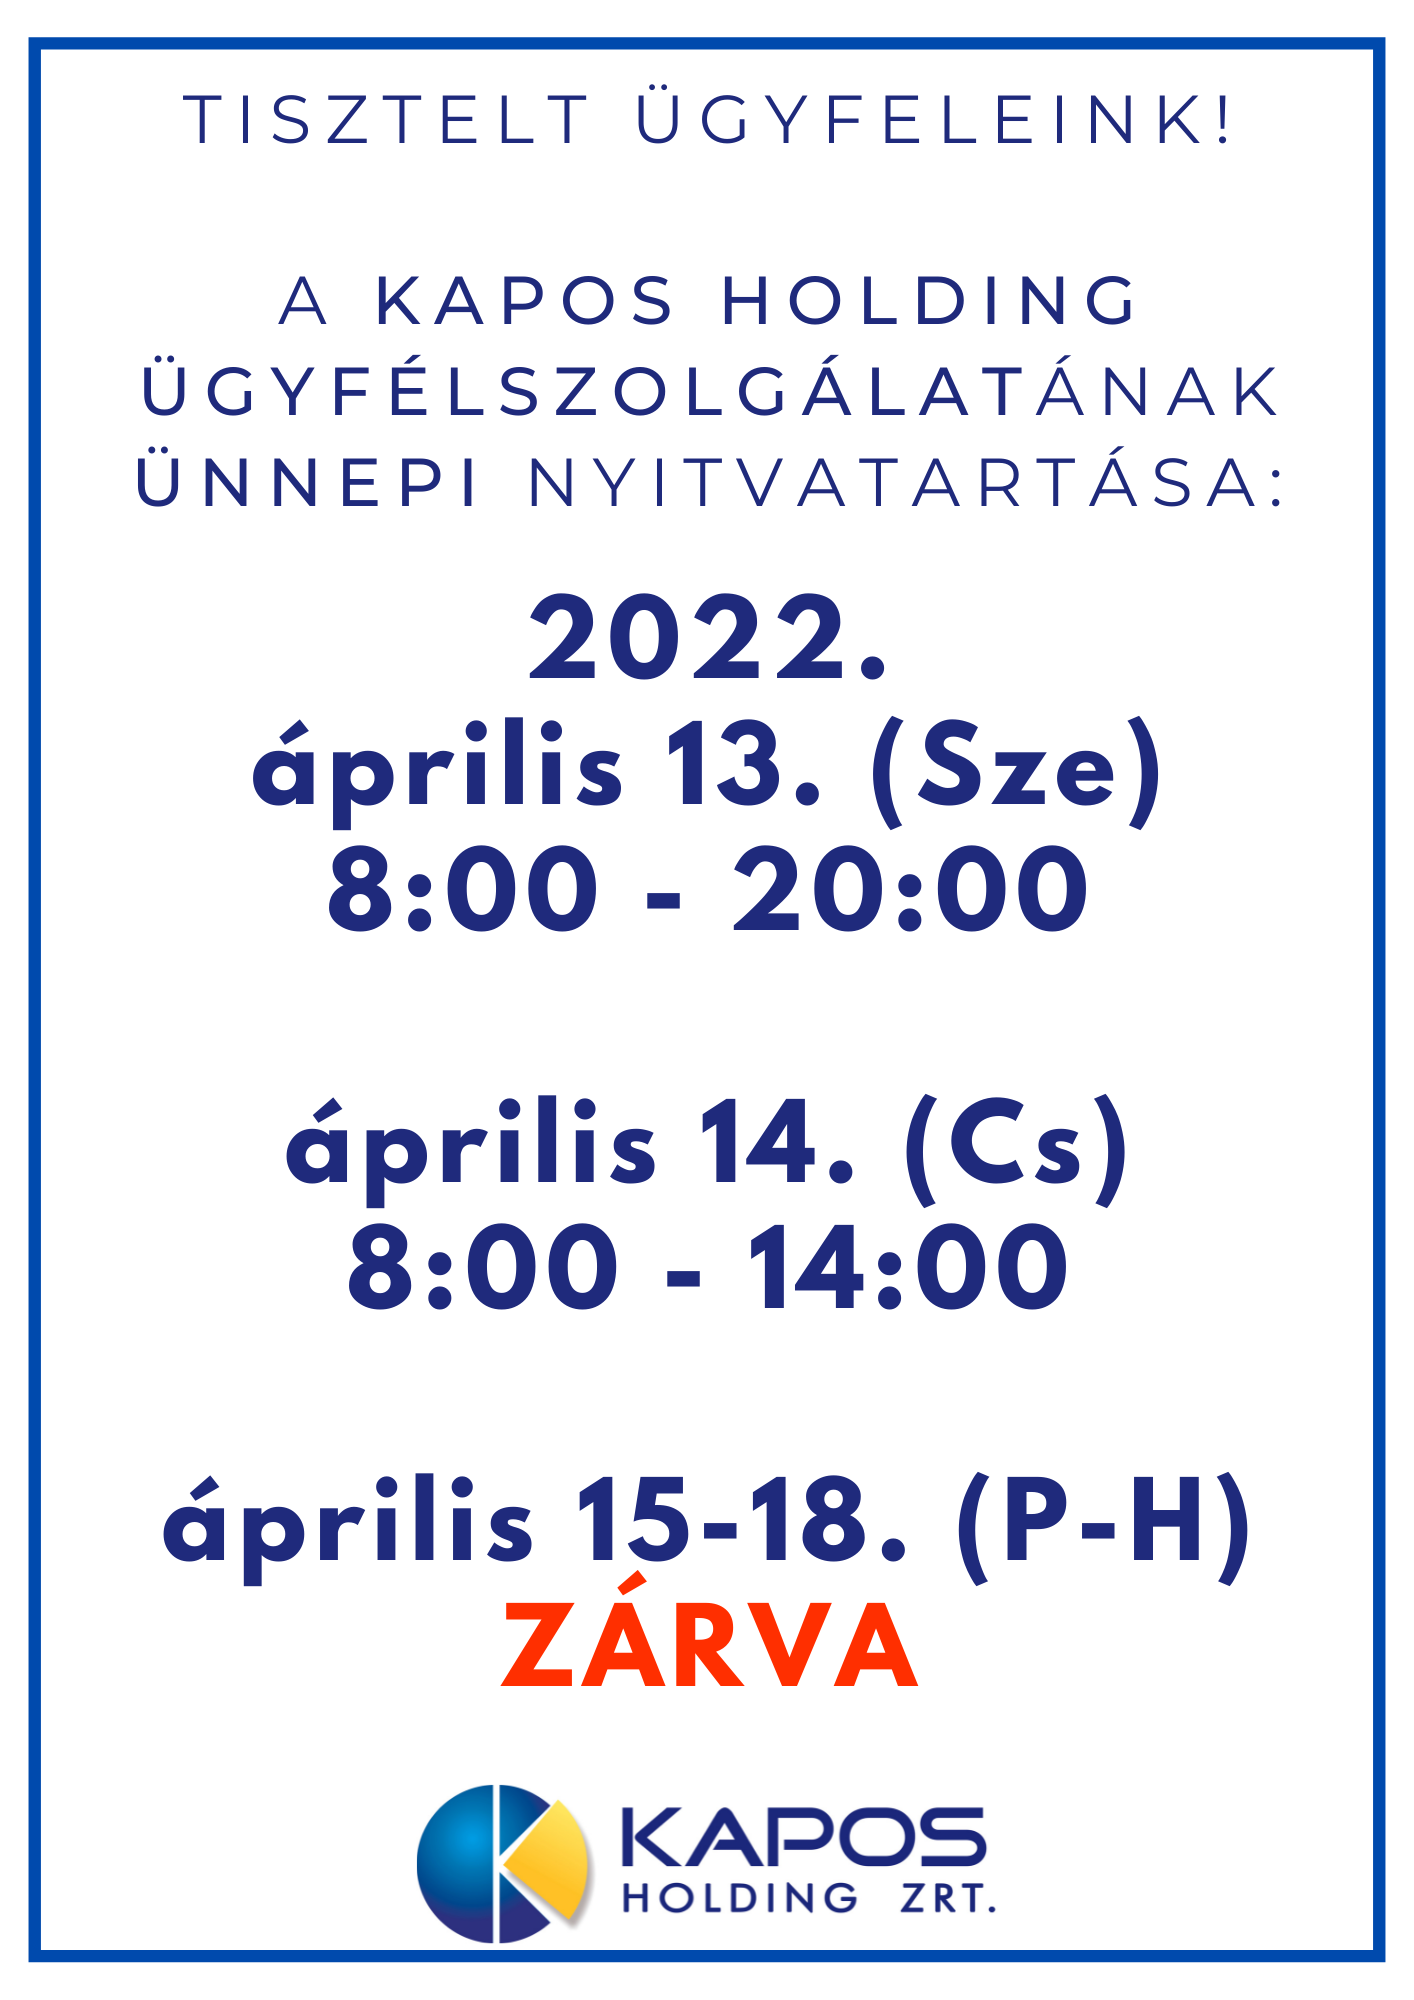 KH ügyfélszolg. 2022. április.png